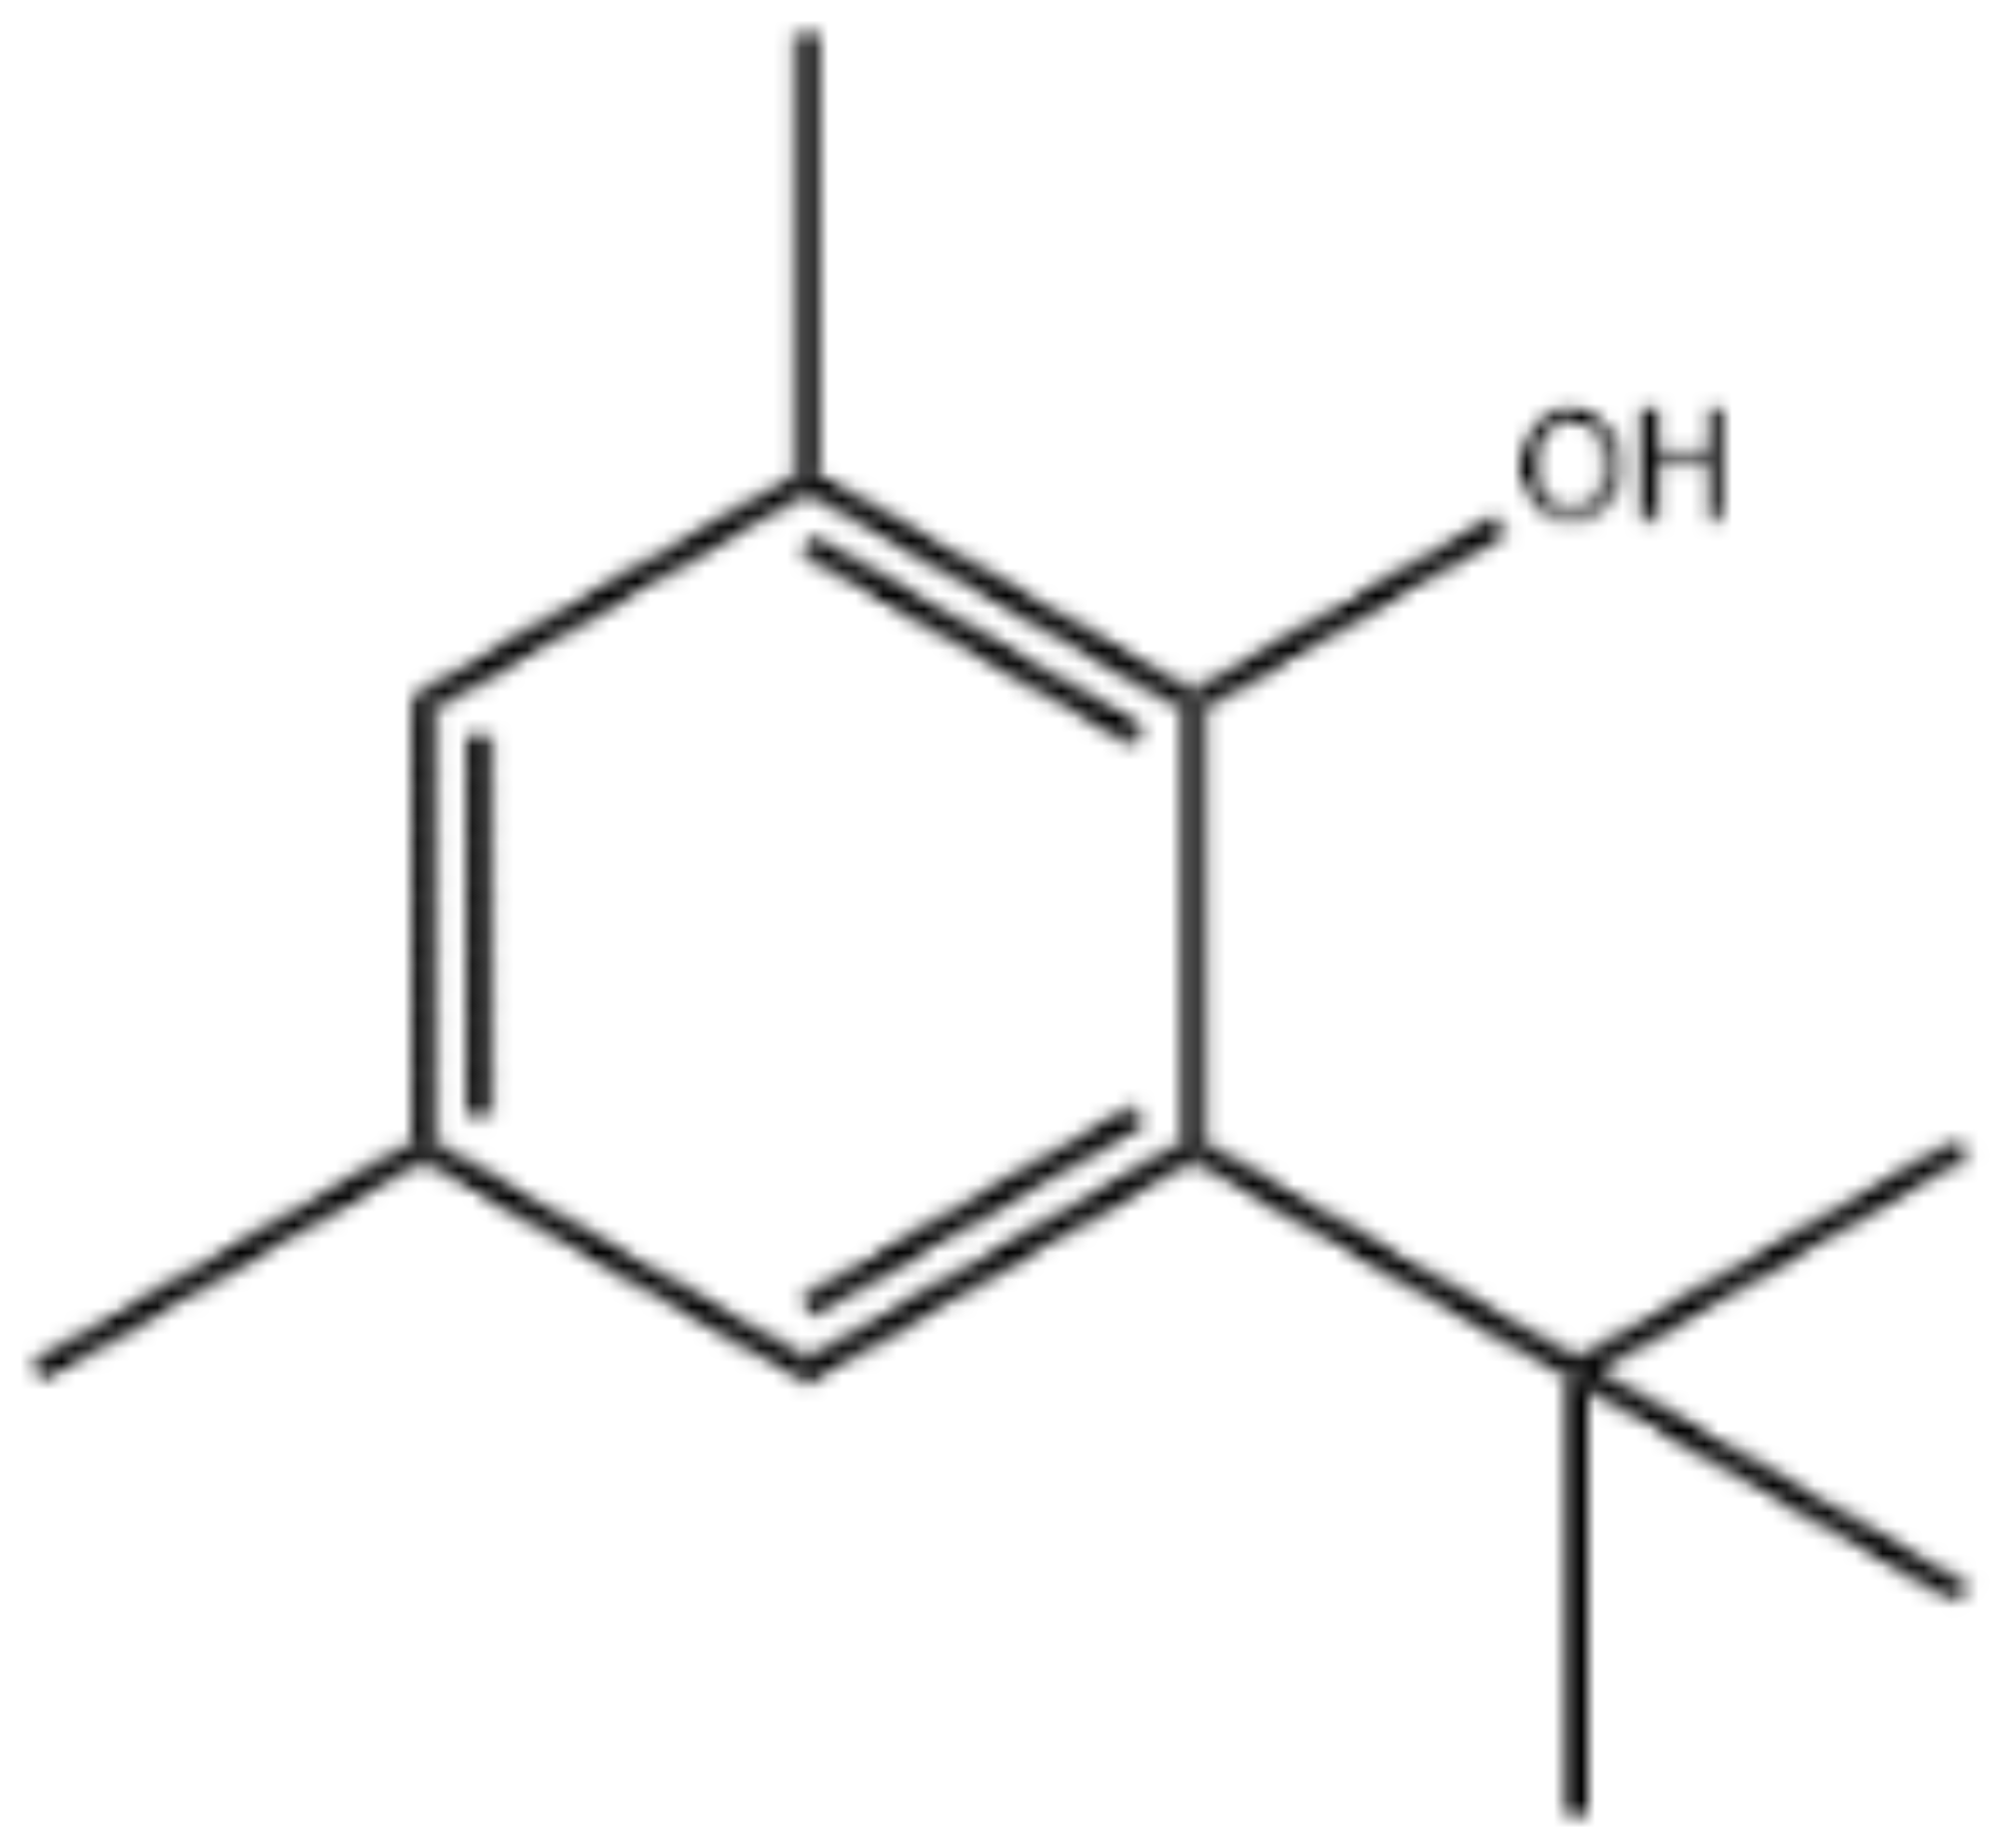 2,4-dimethyl-6-terc-butylfenol